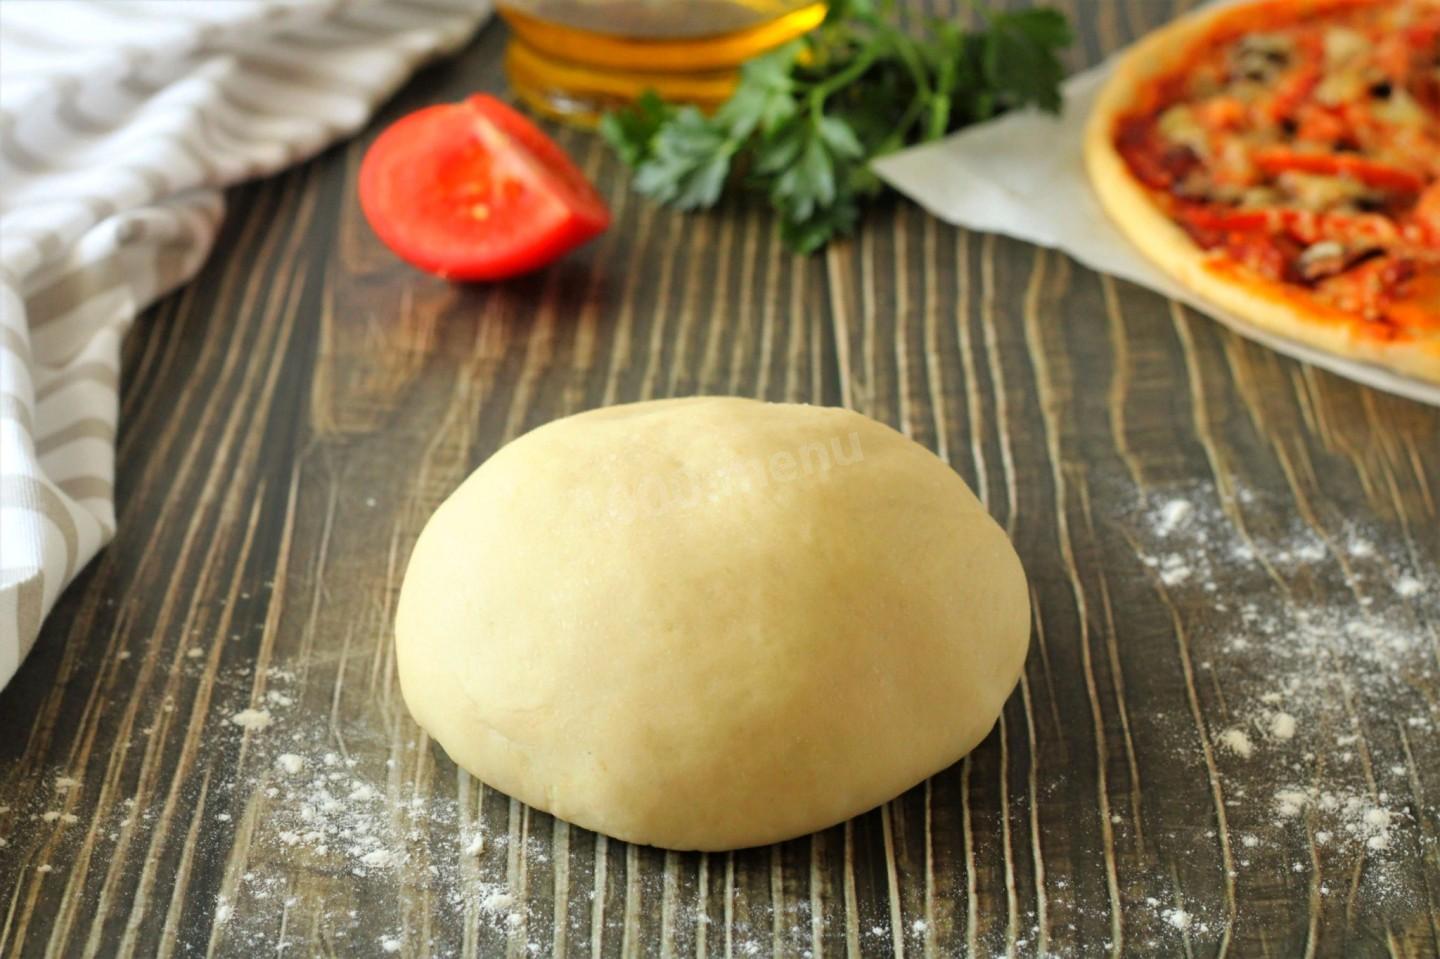 тесто для пиццы дрожжевое на сухих дрожжах быстрого приготовления в духовке воде рецепт с фото фото 33